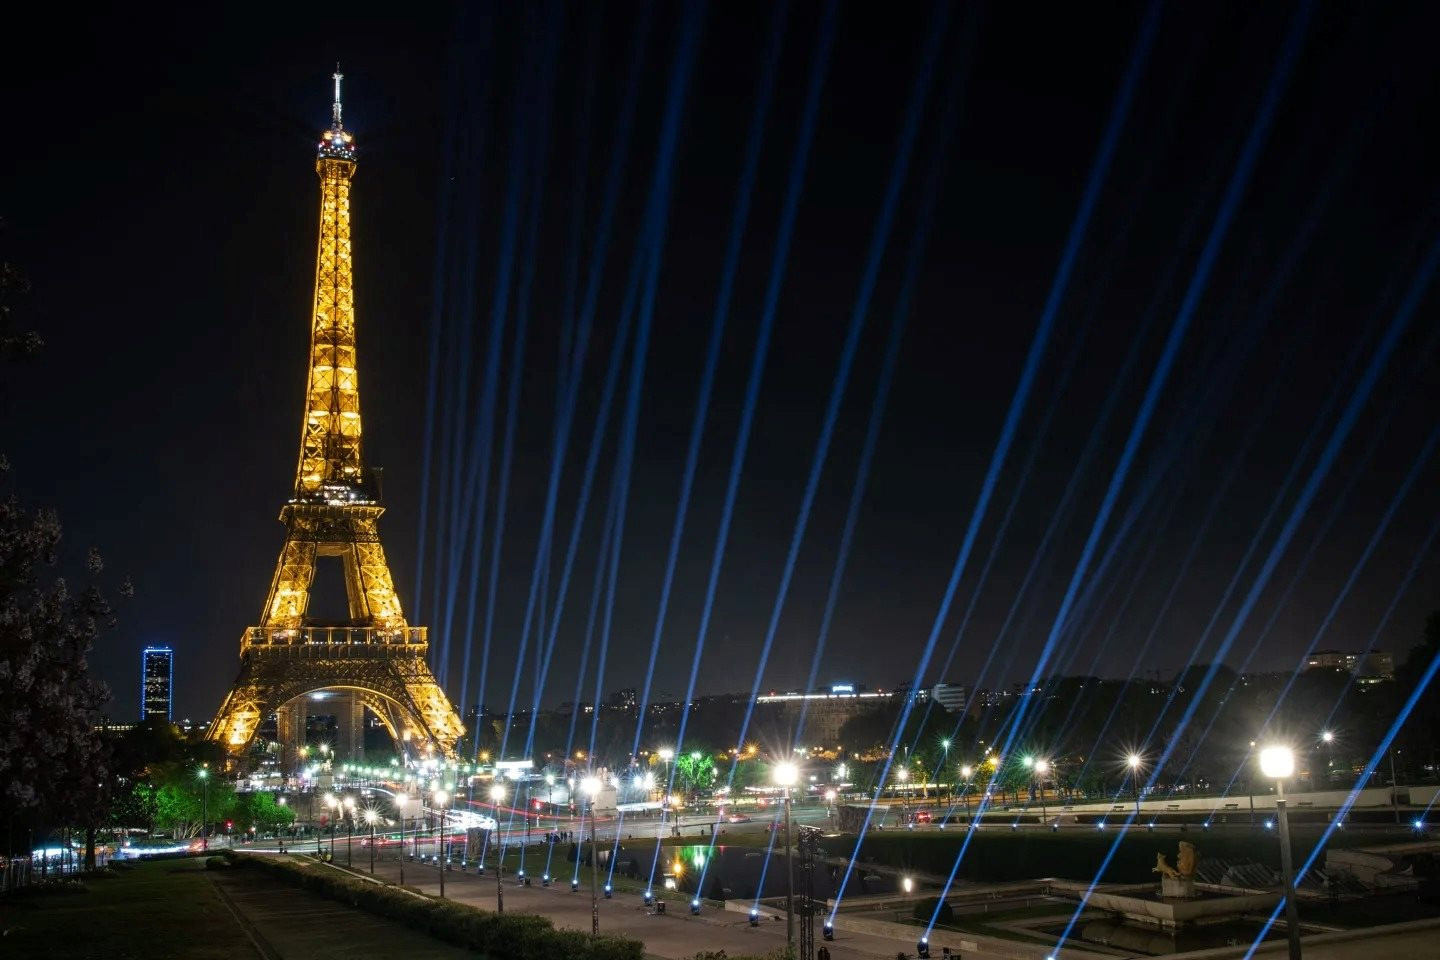 Khủng hoảng năng lượng đến cùng cực, châu Âu sắp tắt cả đèn của tháp Eiffel để tiết kiệm điện